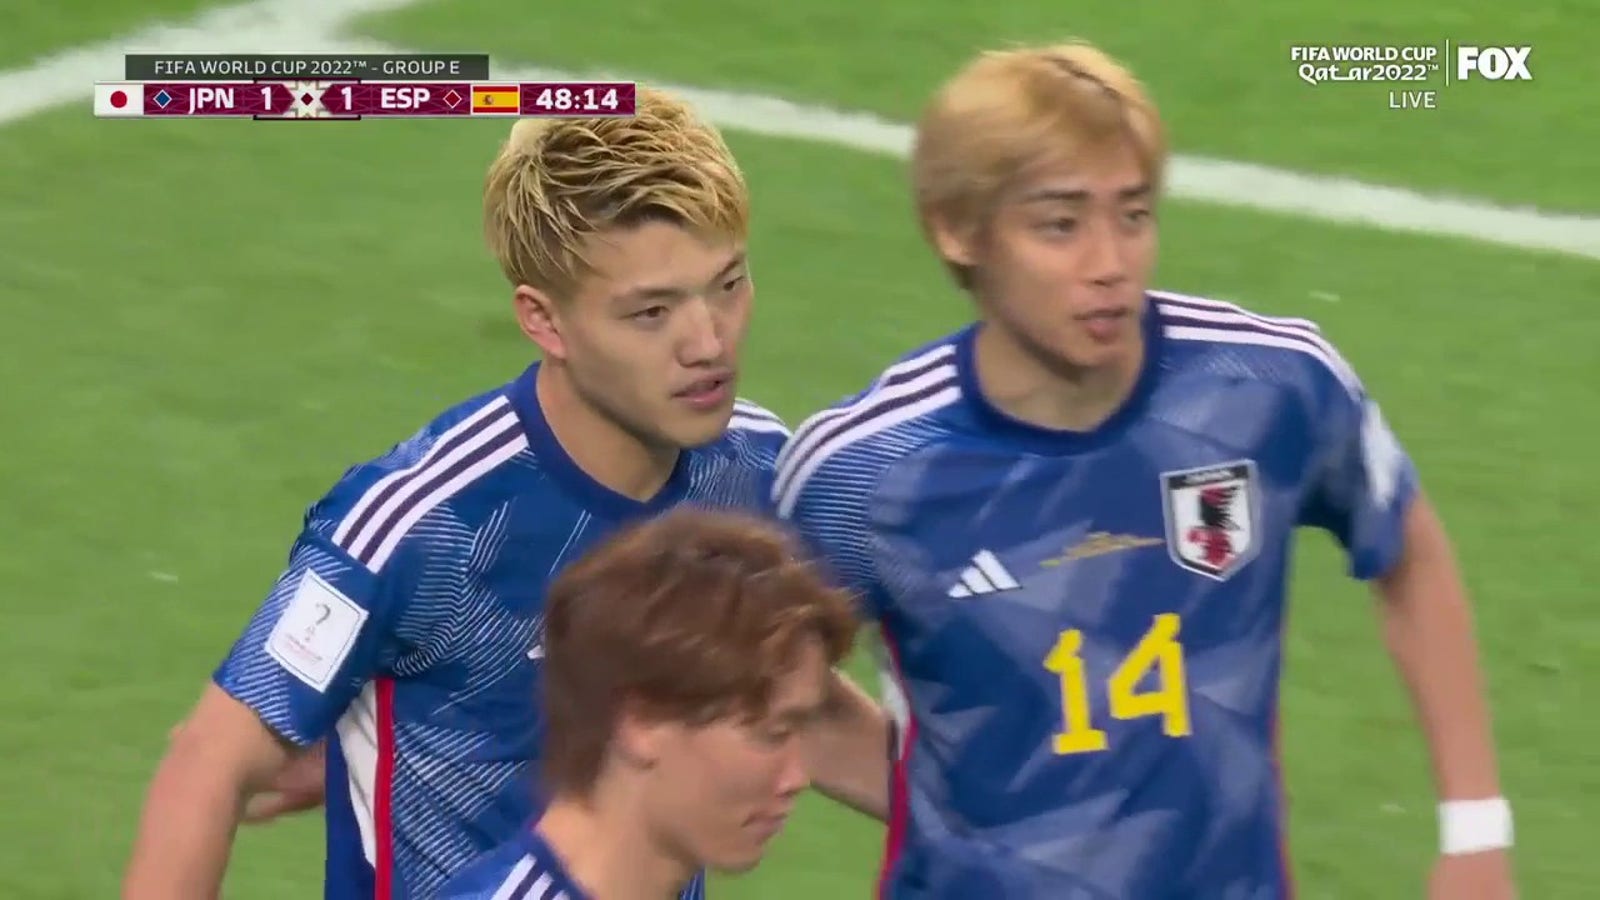 Japan's Ritsu Doan scores goal vs. Spain in 48'